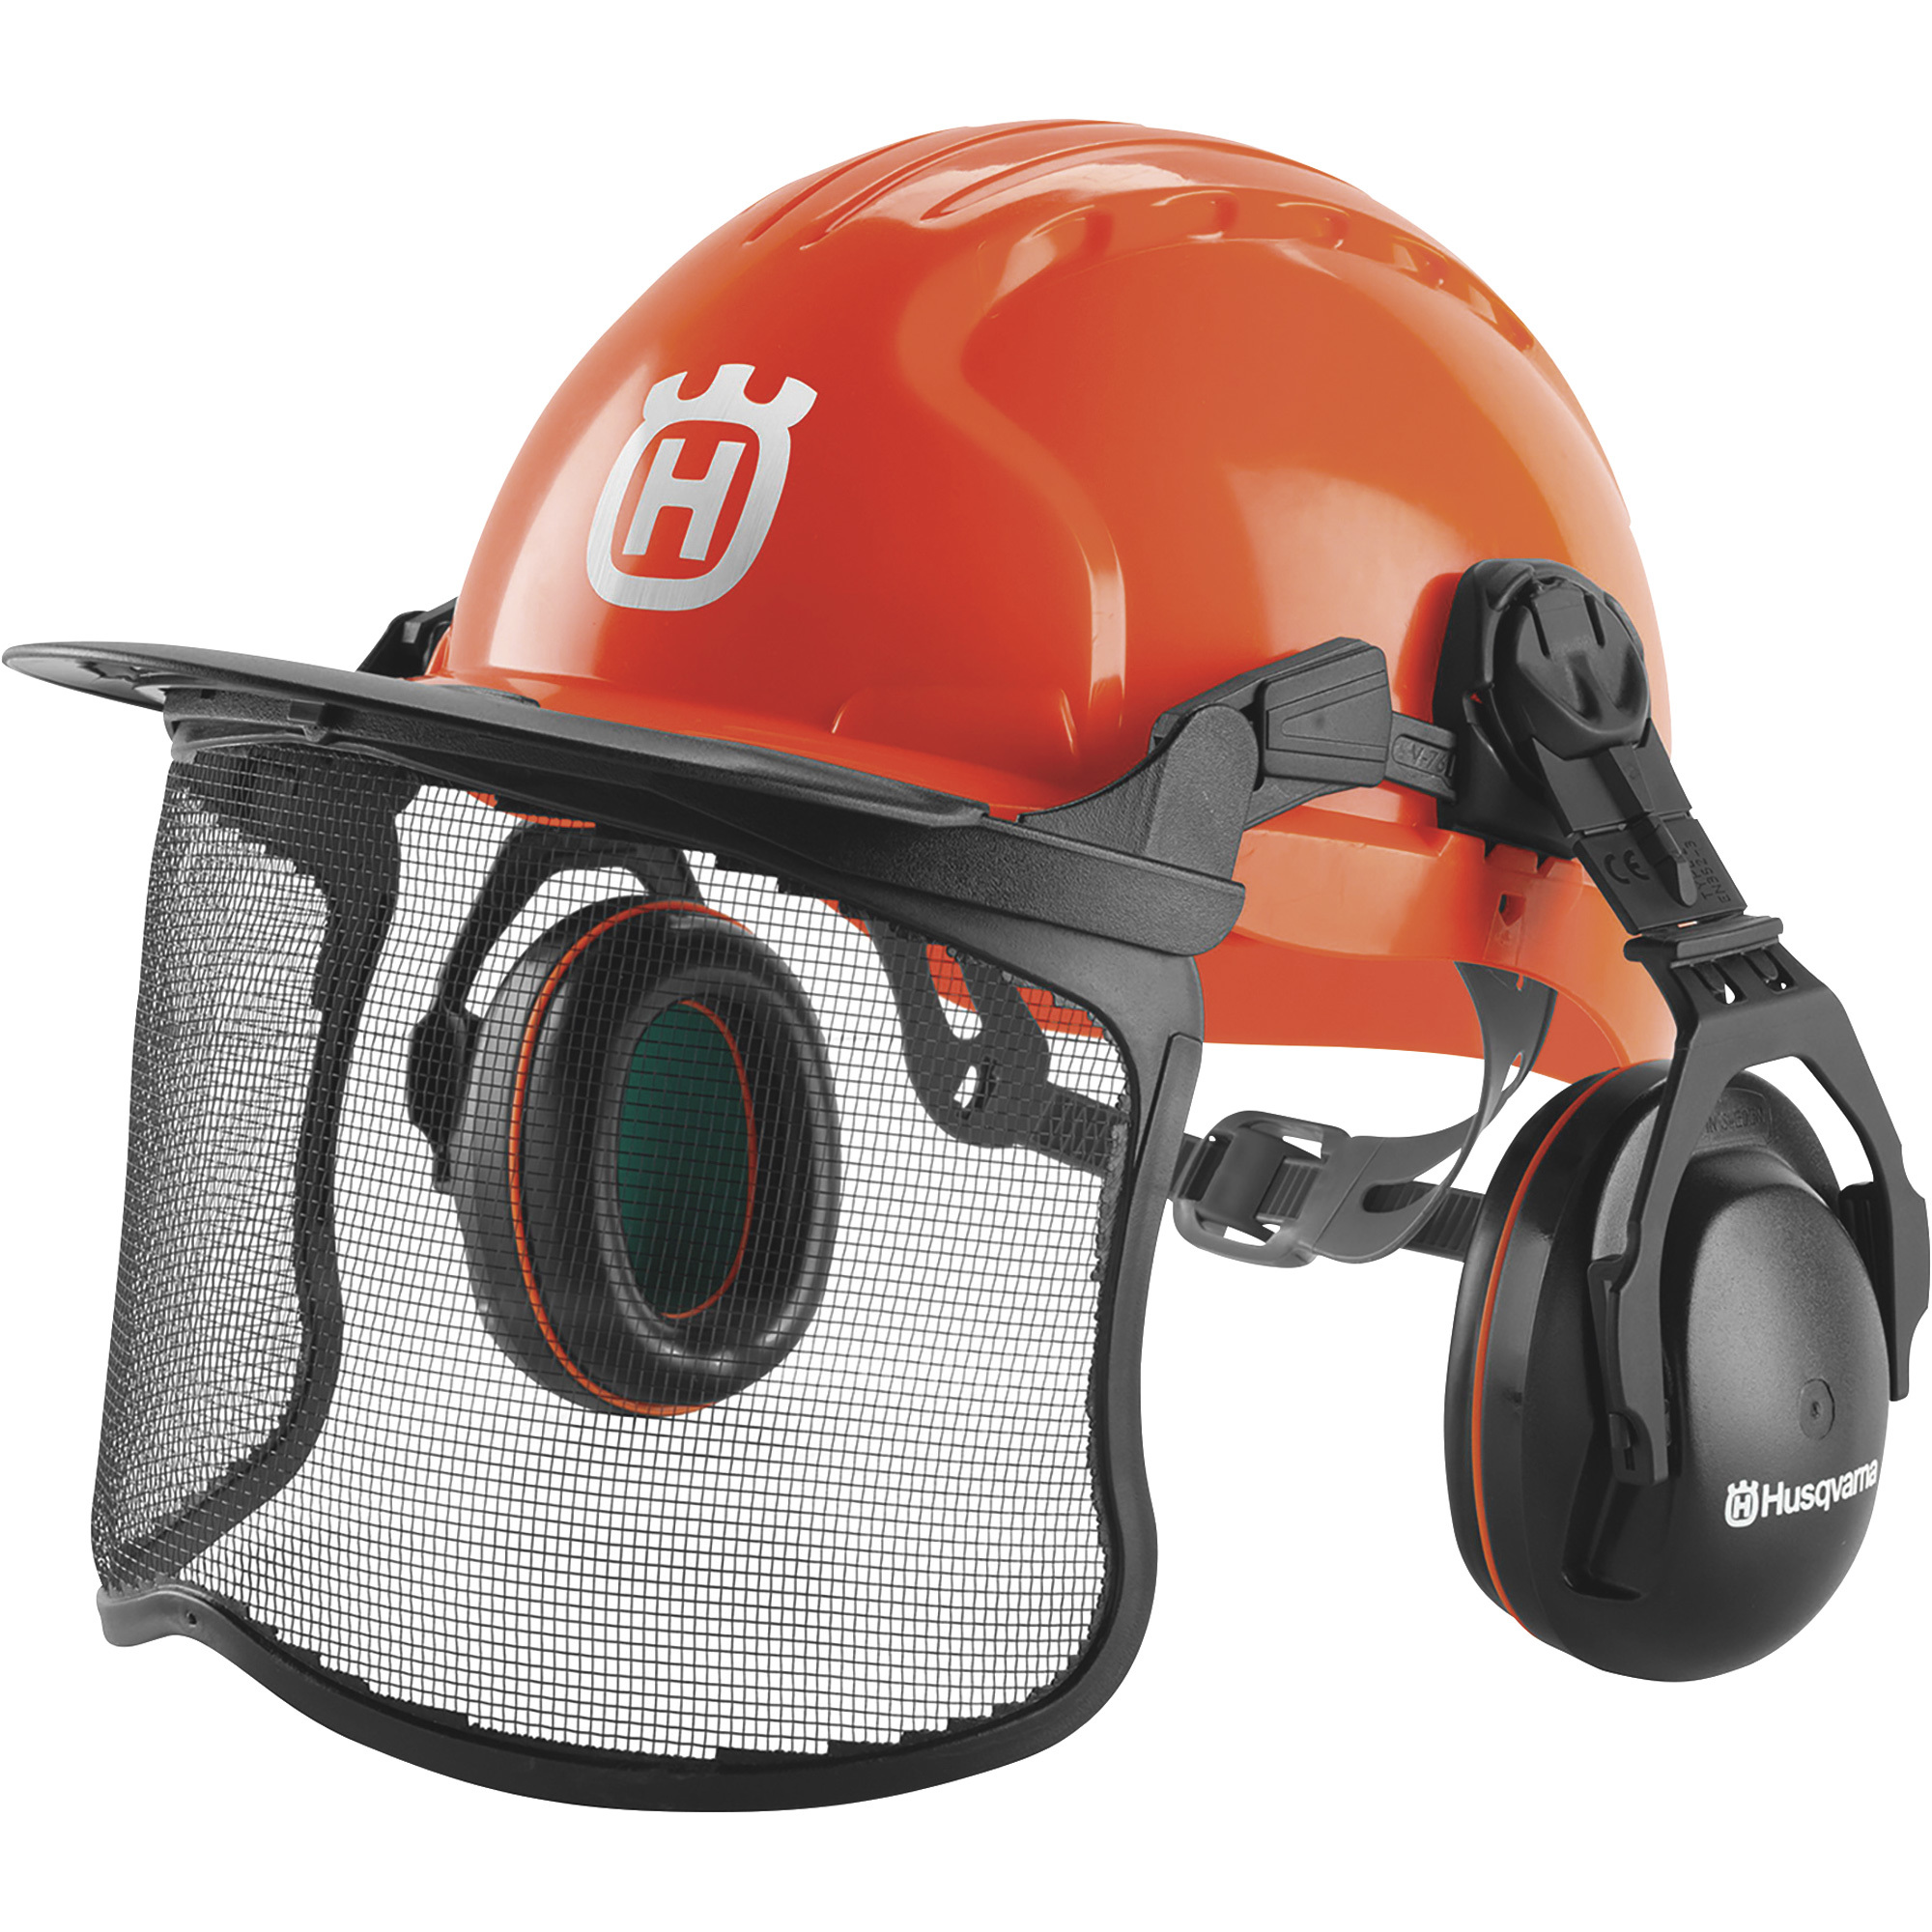 Husqvarna Pro Woodsman Safety Helmet System â Universal Fit, Model H410-1347